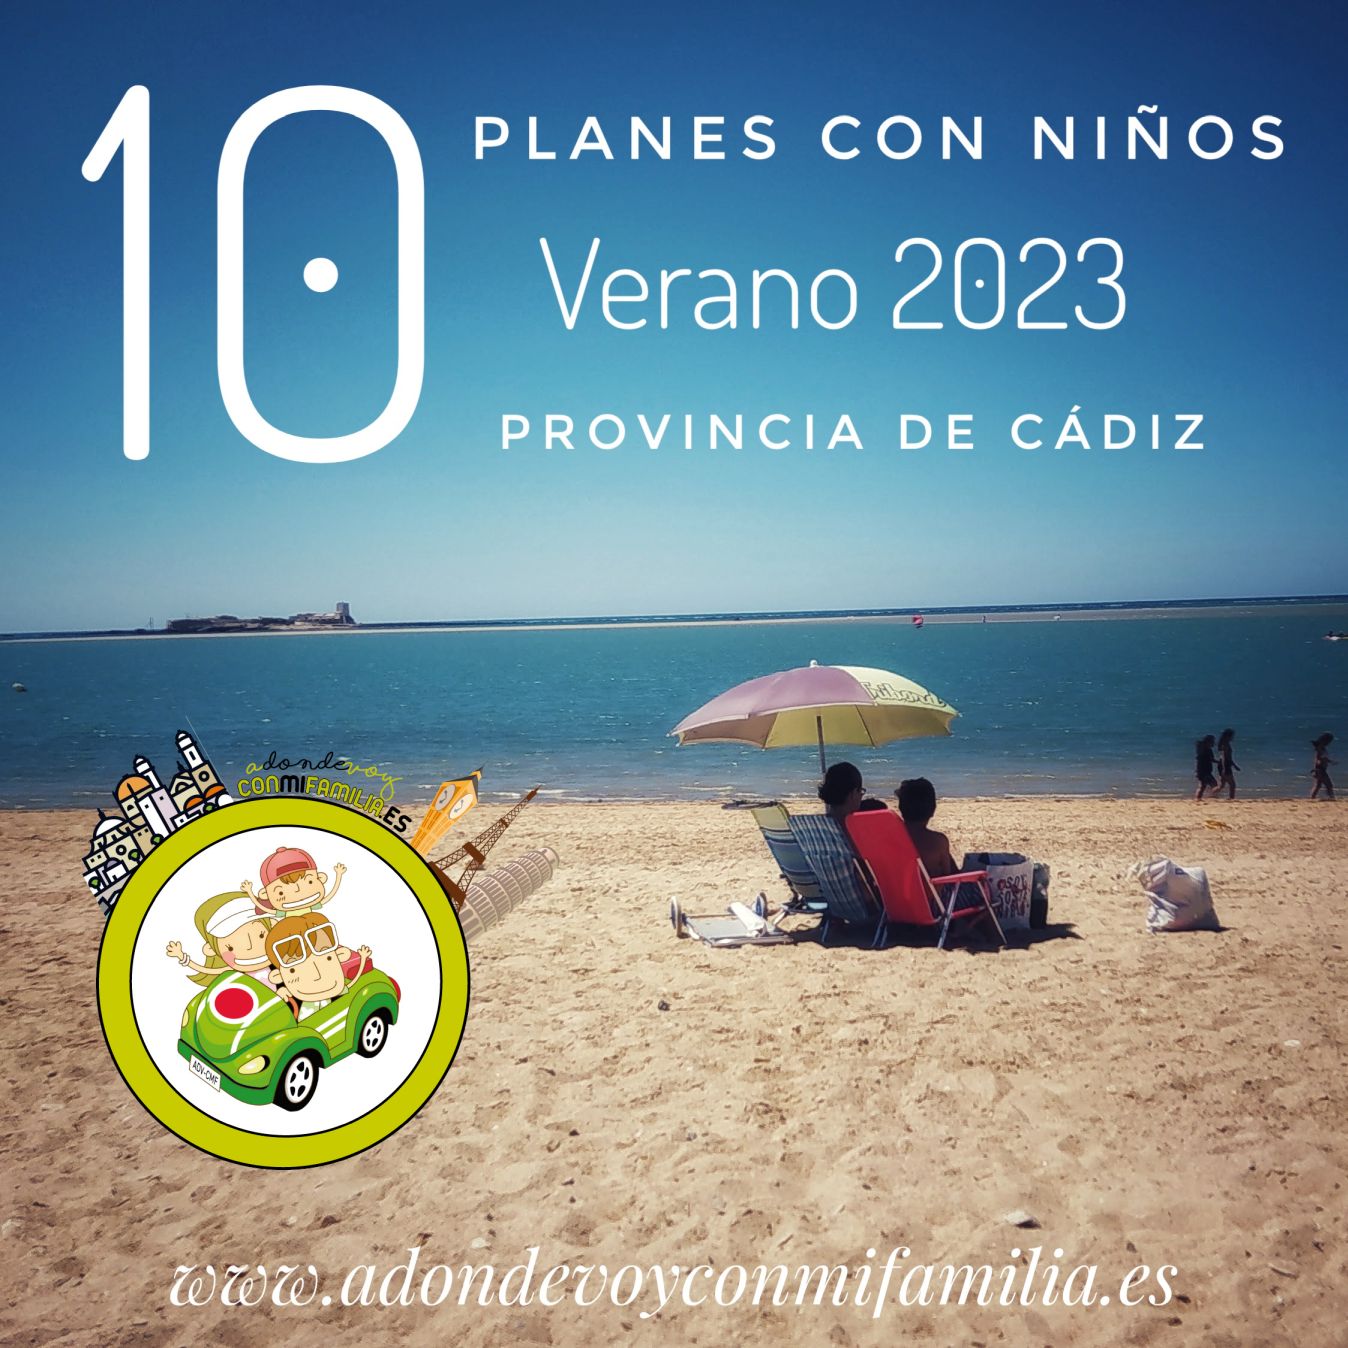 10 planes con niños verano 2023 provincia de Cádiz adondevoyconmifamilia_1